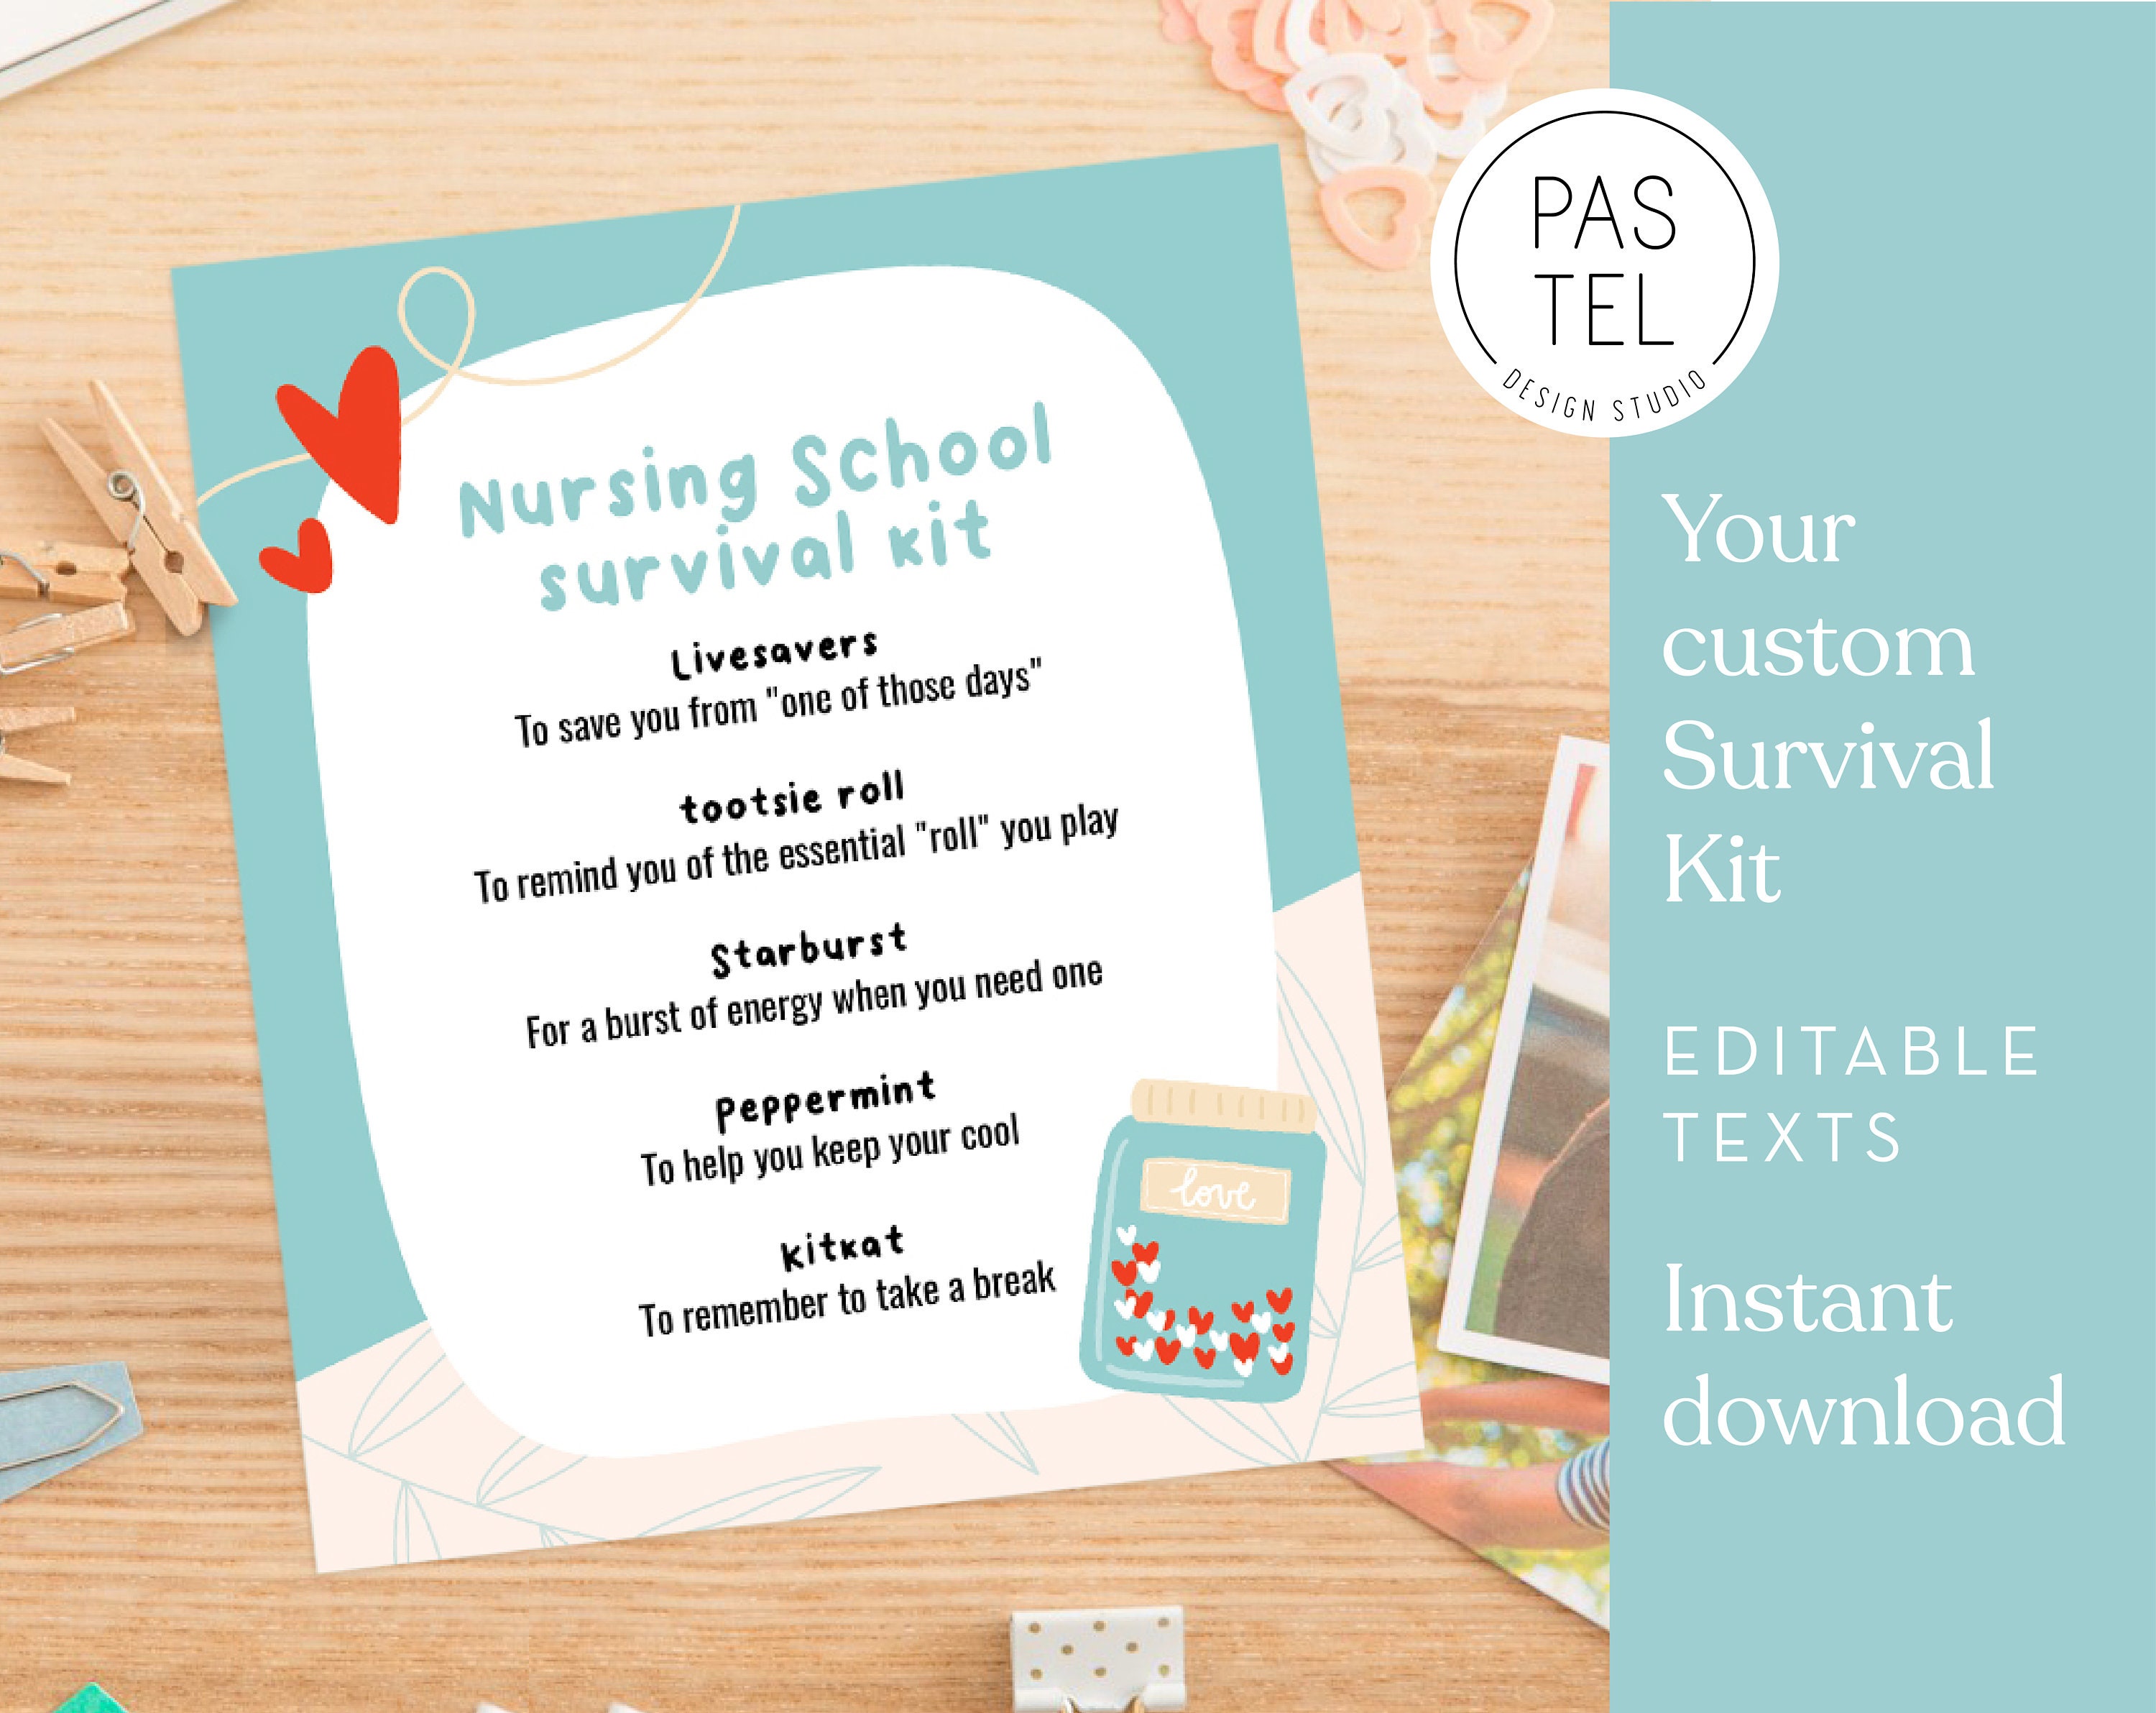 Student Practical Nursing Supply Kit